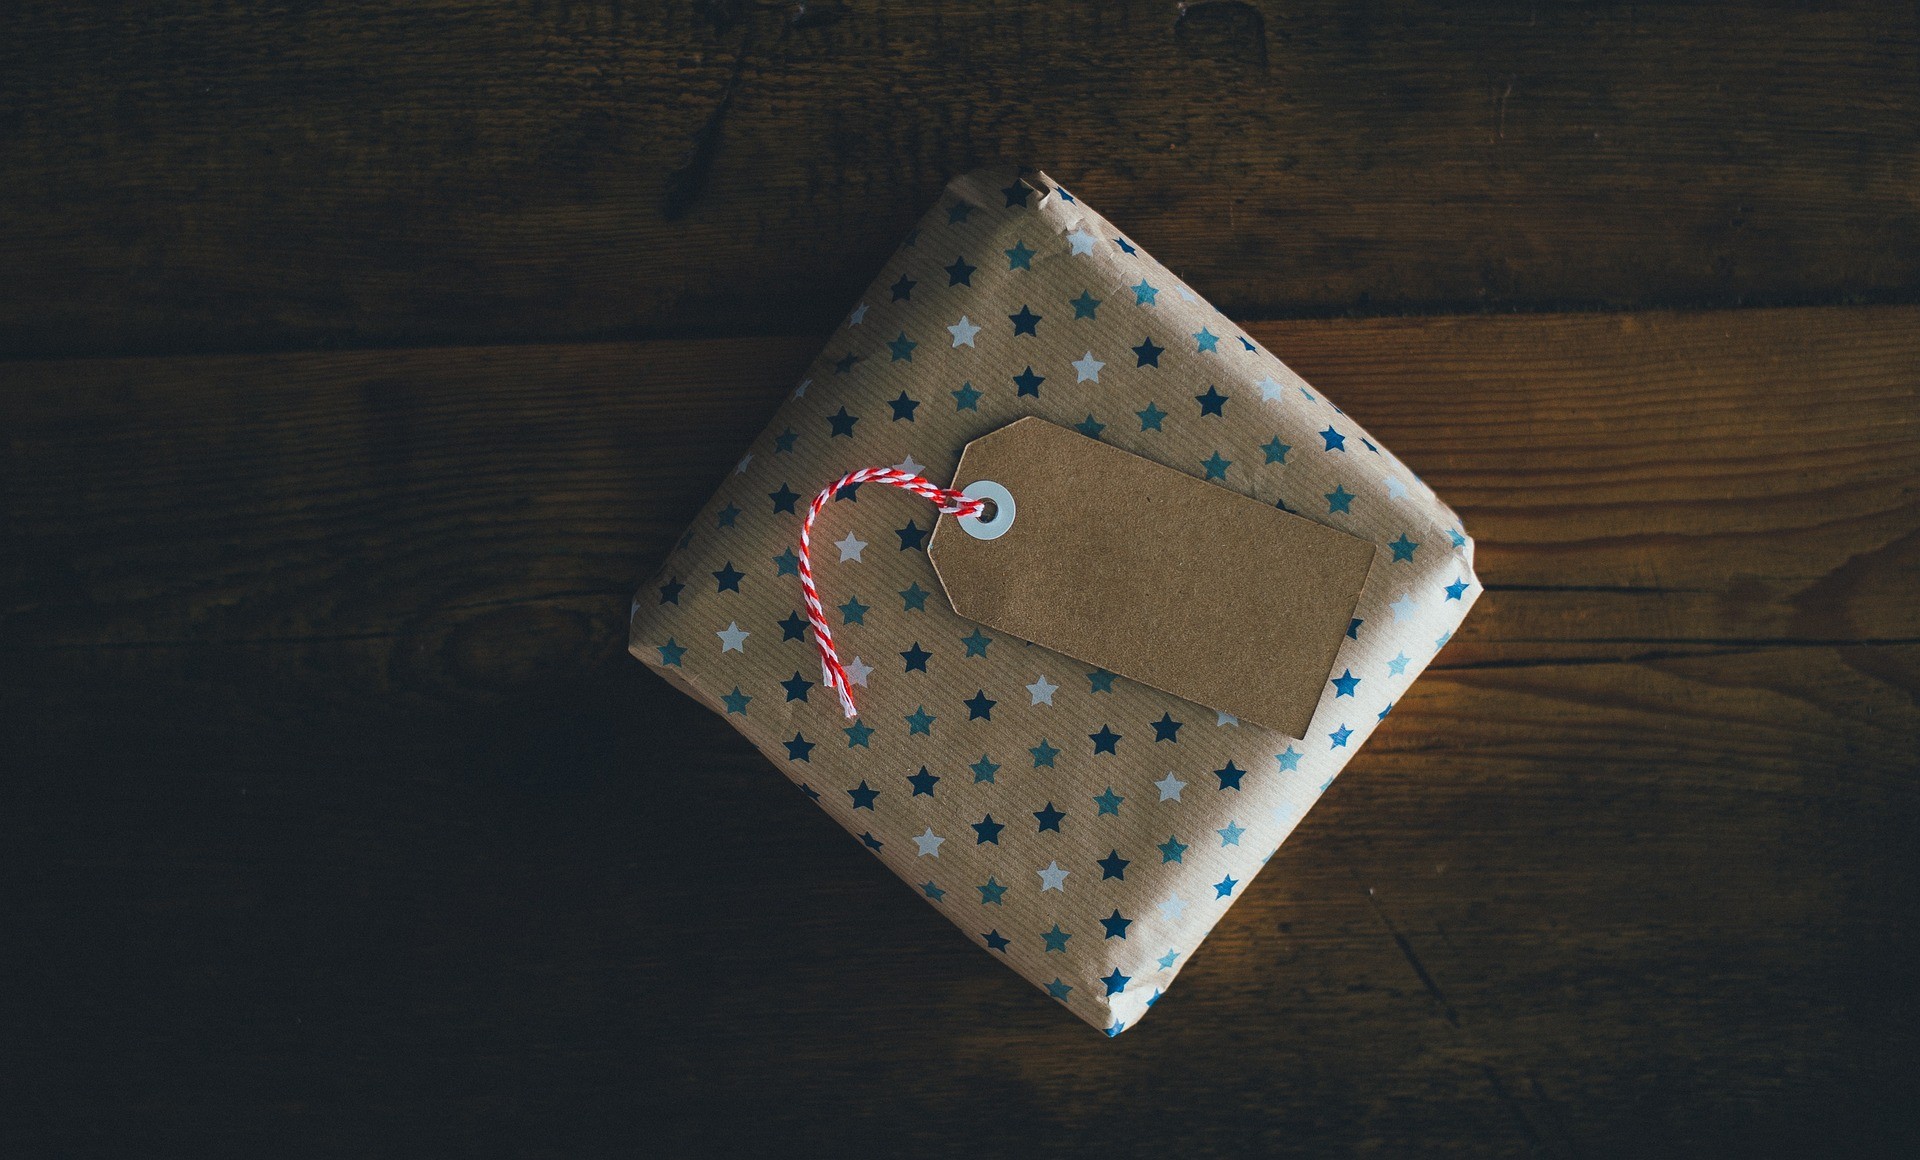 Nachhaltige Geschenkideen (Quelle: Pixabay.com)